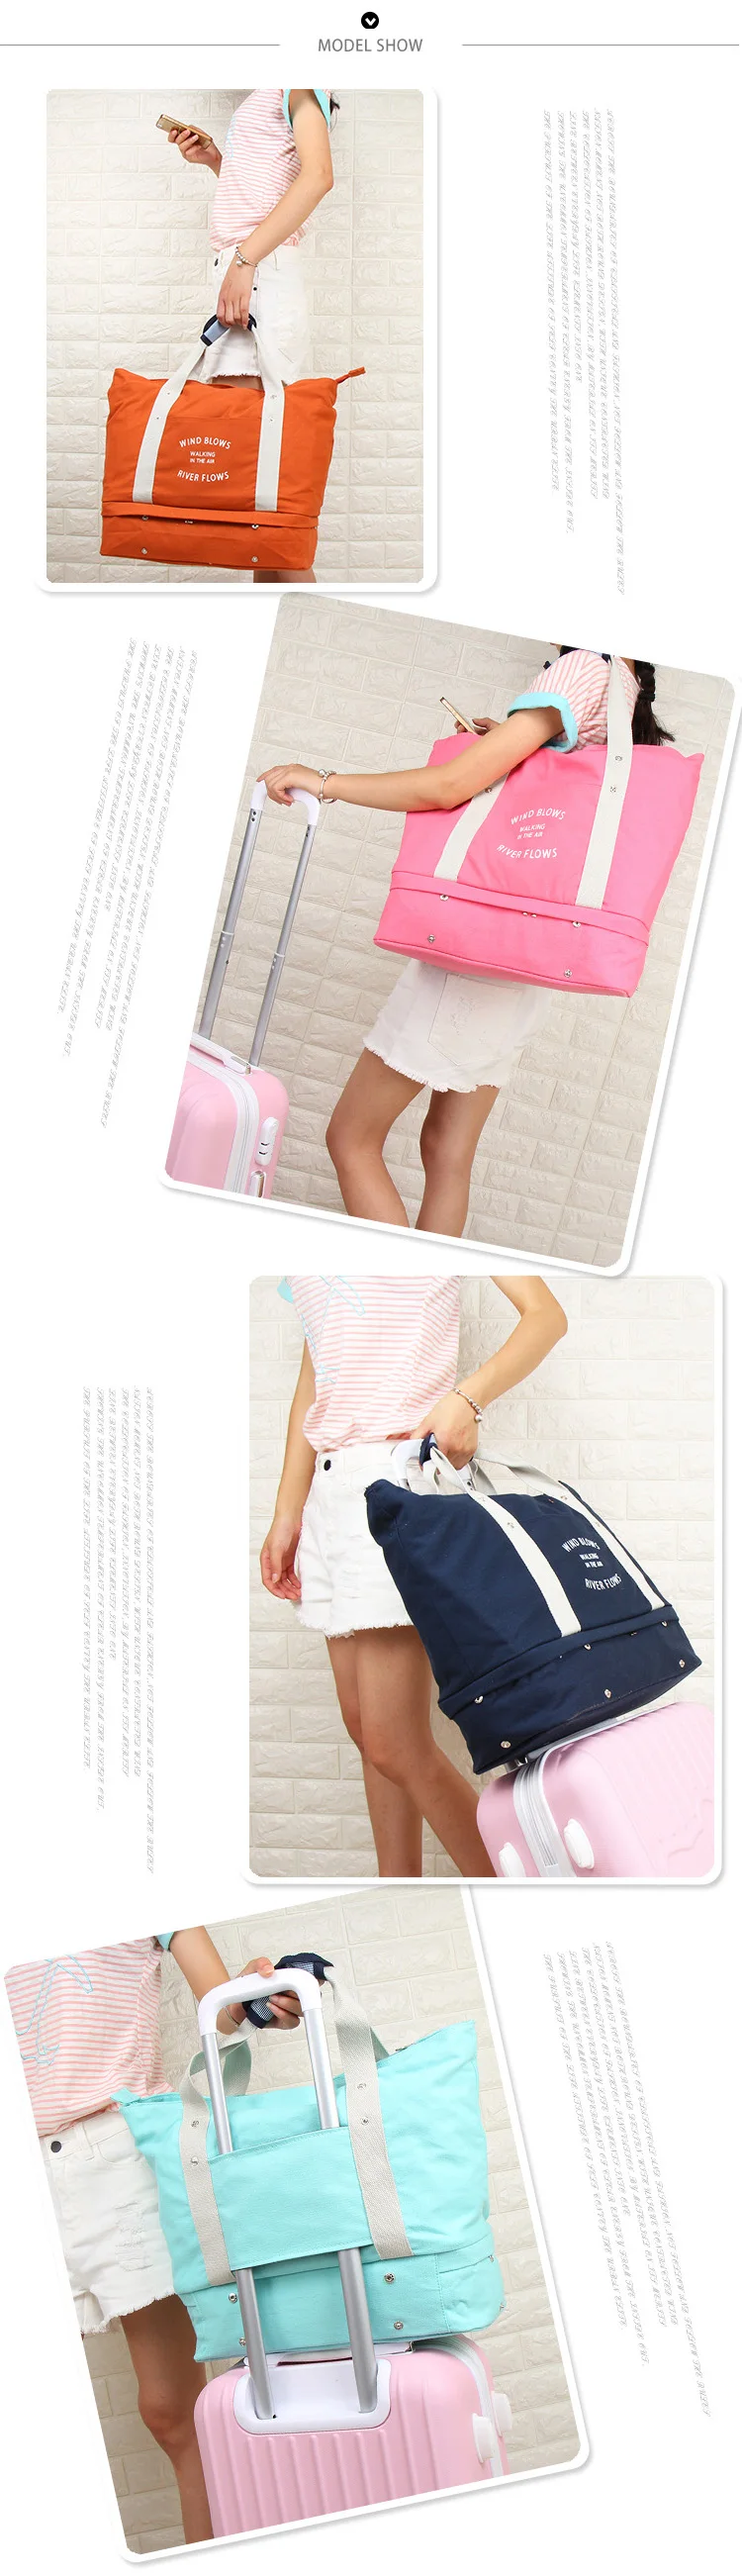 Shushiruo большой Ёмкость Для женщин Чемодан Дорожные сумки для хранения одежды холст складной сумка унисекс Чемодан Упаковка Организатор